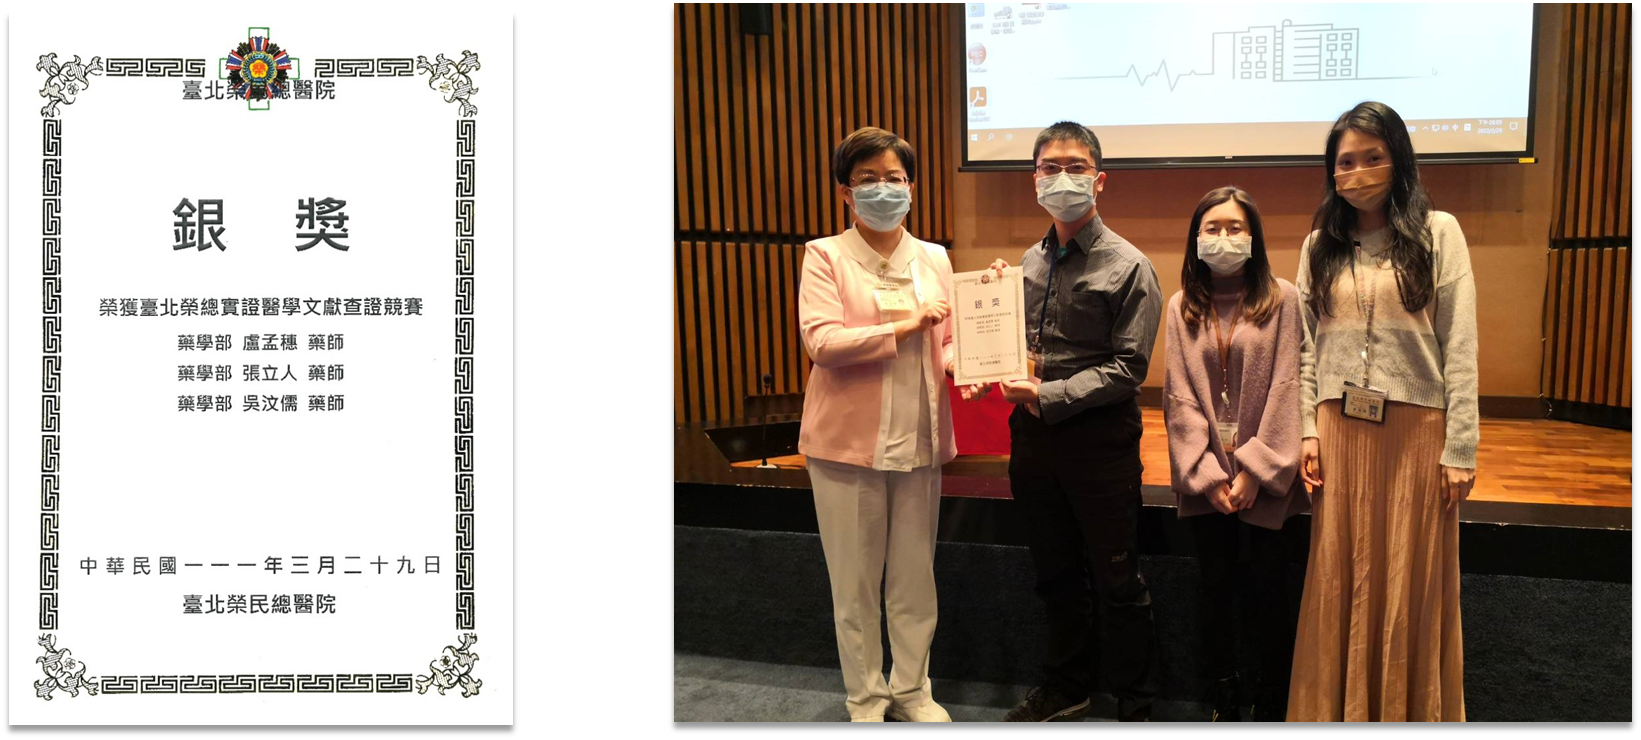 盧孟穗藥師與張立人藥師、吳汶儒藥師組隊，參加「臺北榮總 2022 年實證醫學文獻查證競賽」，榮獲銀獎。
��